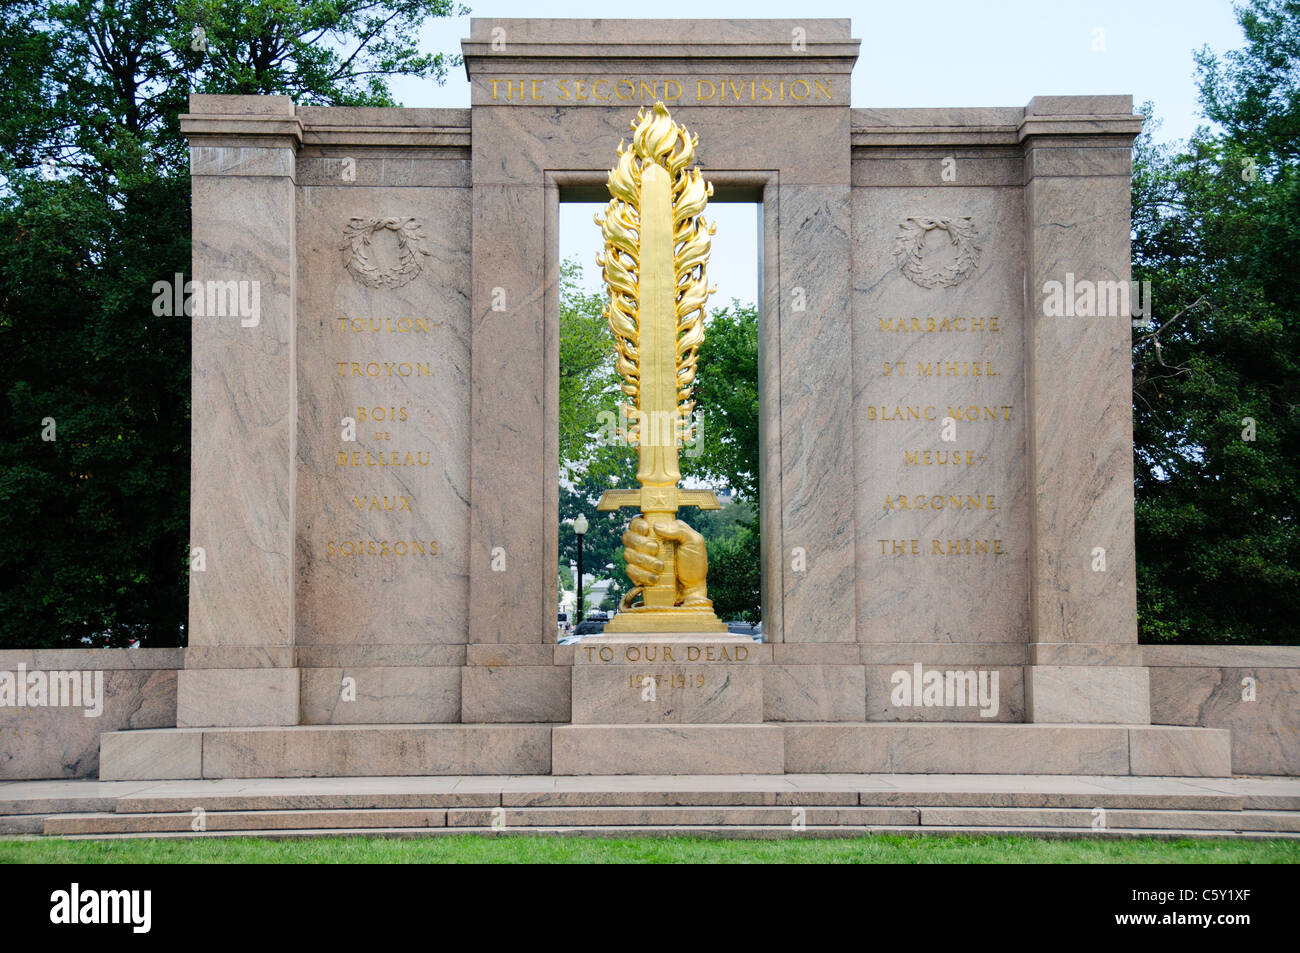 WASHINGTON DC, USA - La deuxième division Memorial dans le parc à côté de l'Ellipse et non loin de la Maison Blanche. Il commémore ceux qui sont morts en servant dans la 2e Division d'infanterie de l'armée des États-Unis. Banque D'Images